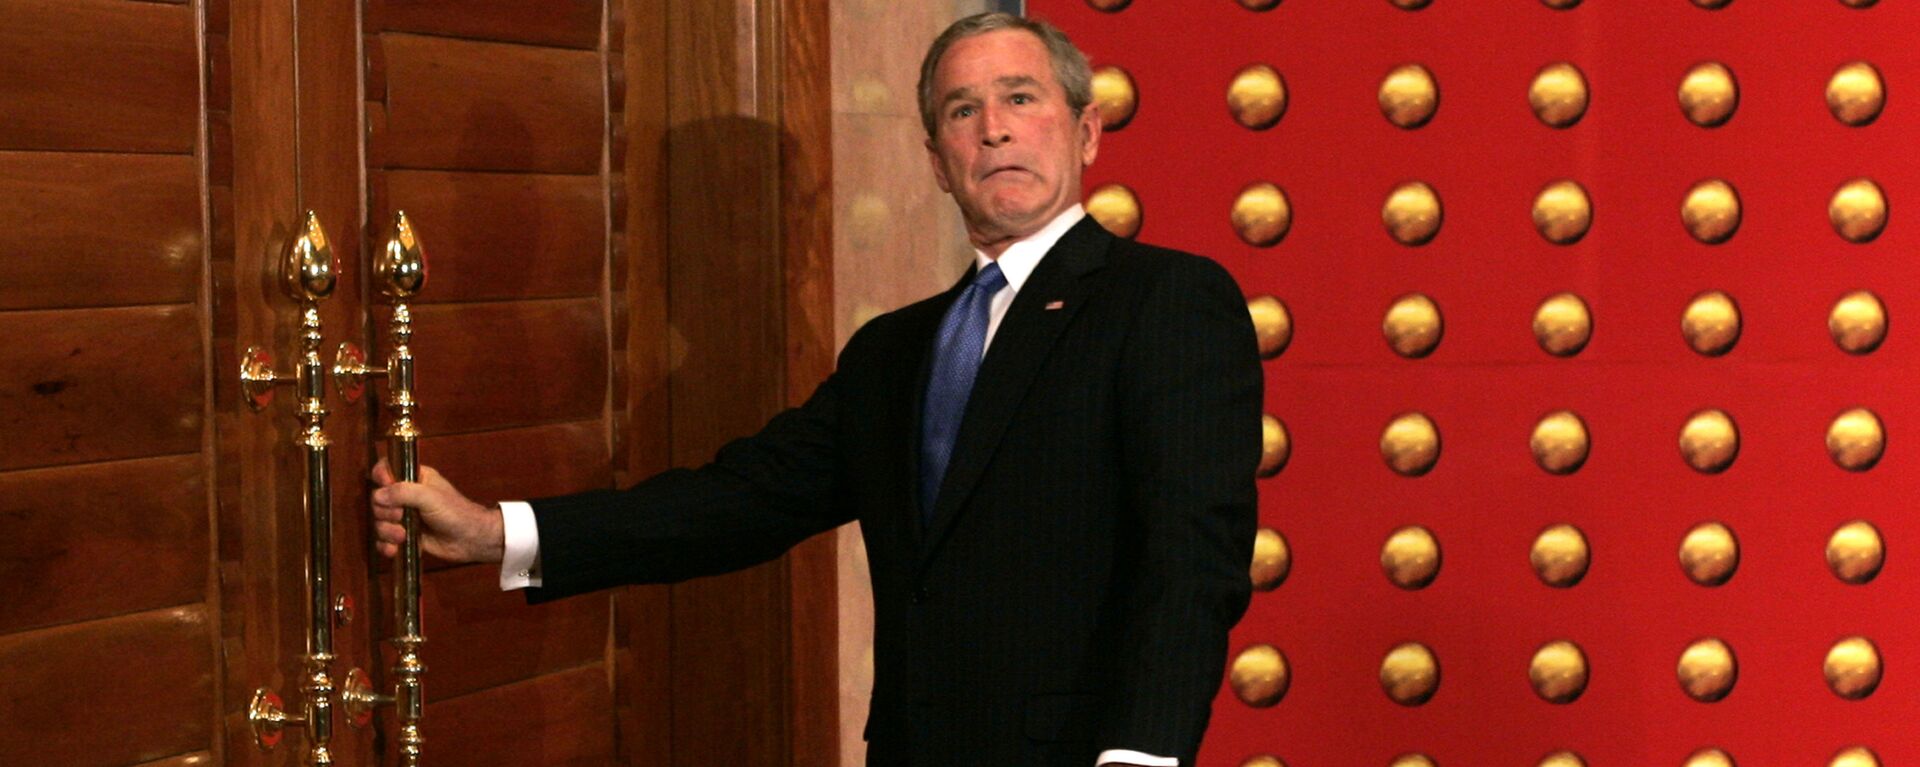  Tổng thống George Bush không thể mở cửa trong chuyến thăm cấp nhà nước tới Trung Quốc. - Sputnik Việt Nam, 1920, 19.05.2022